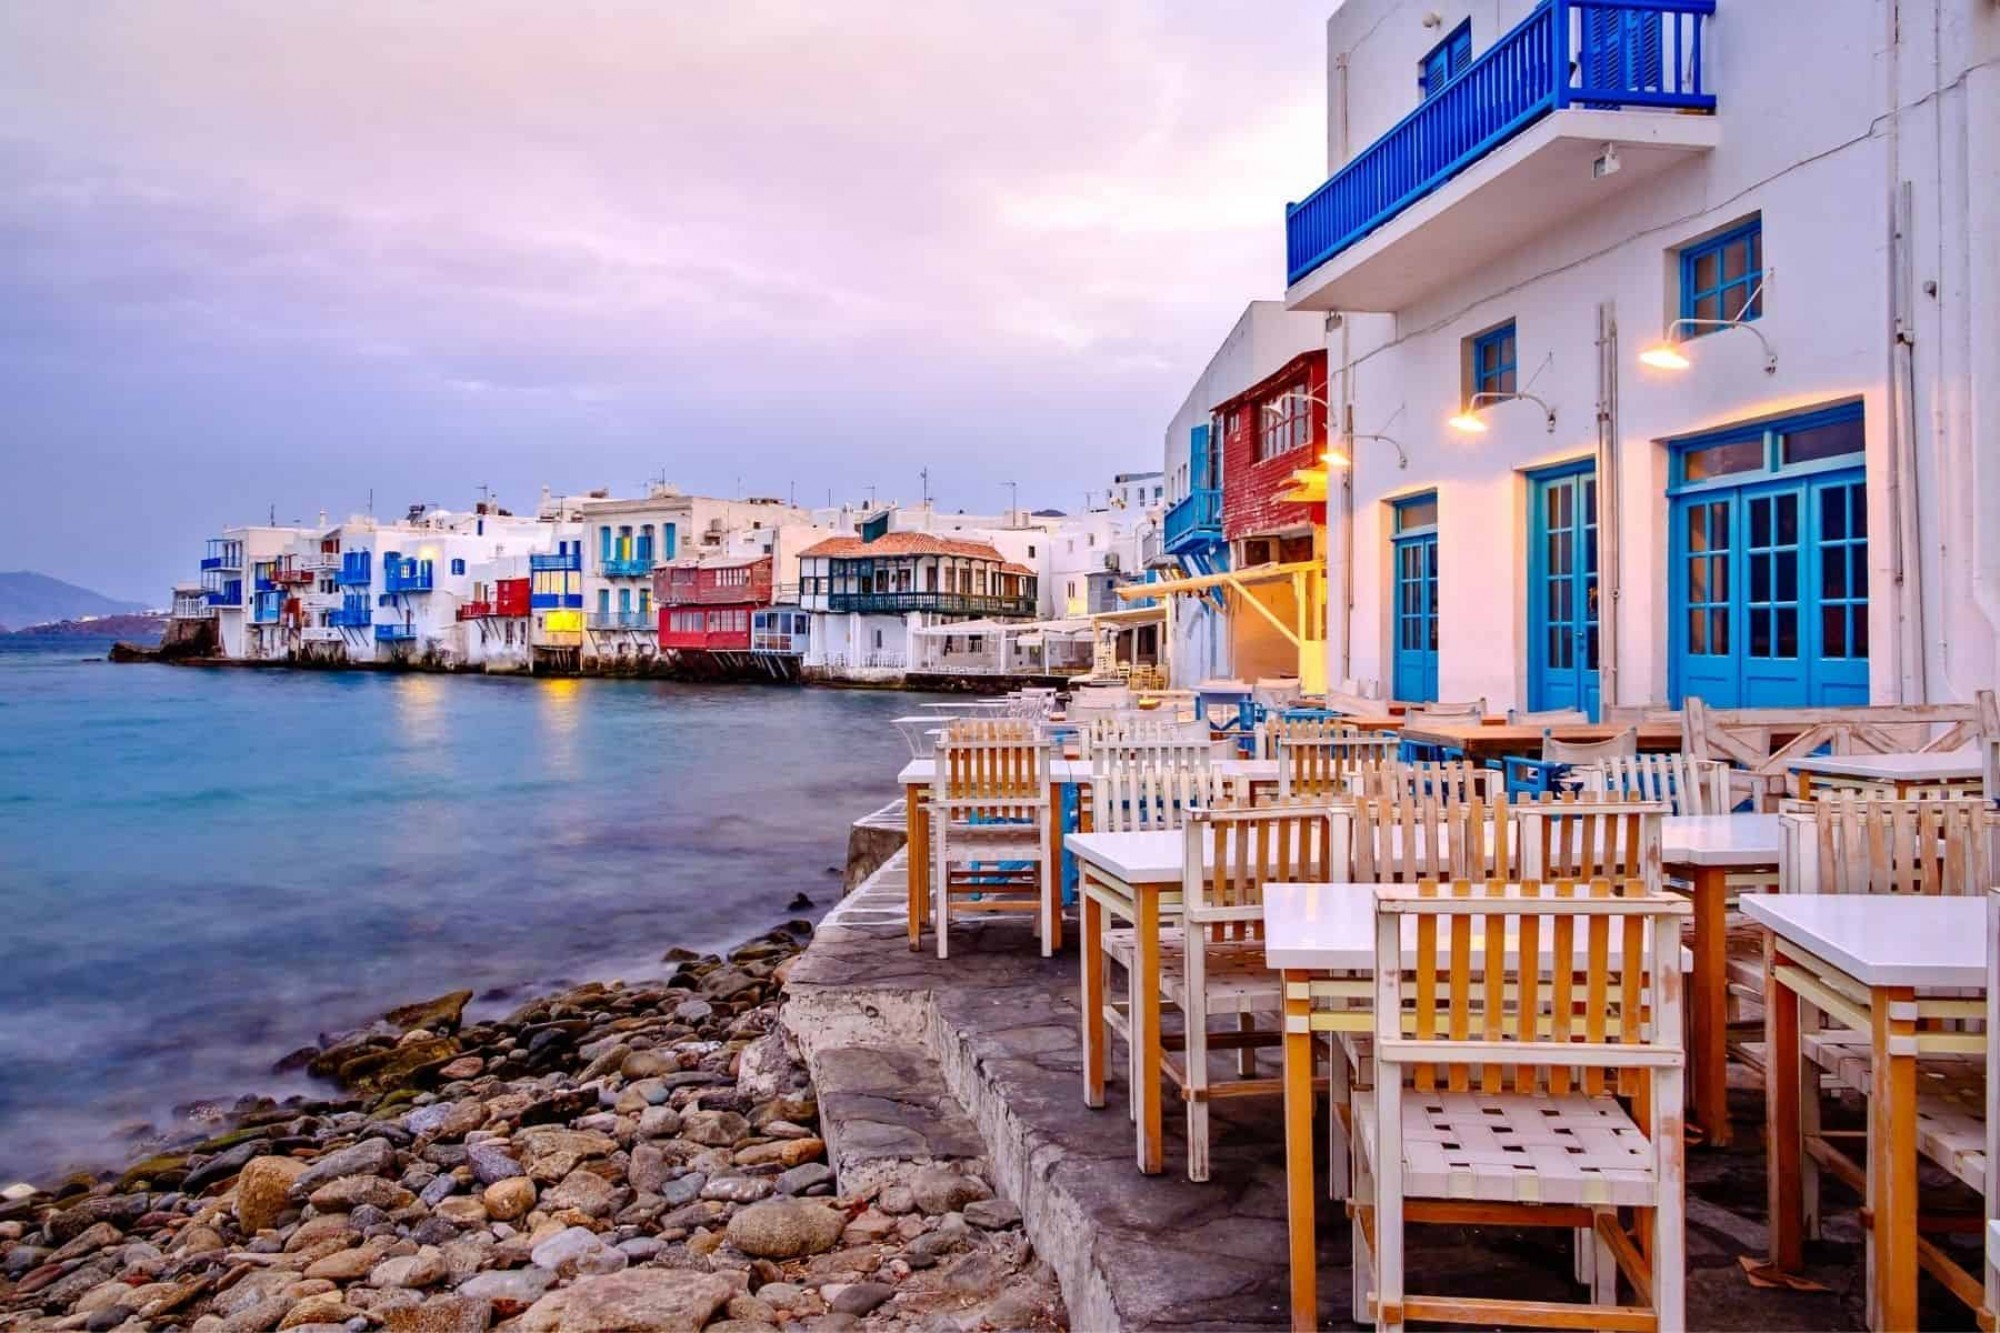 Οι τουρίστες τρομοκρατήθηκαν αφού πλήρωσαν 876 δολάρια για δύο ποτά σε ελληνικό νησιώτικο εστιατόριο